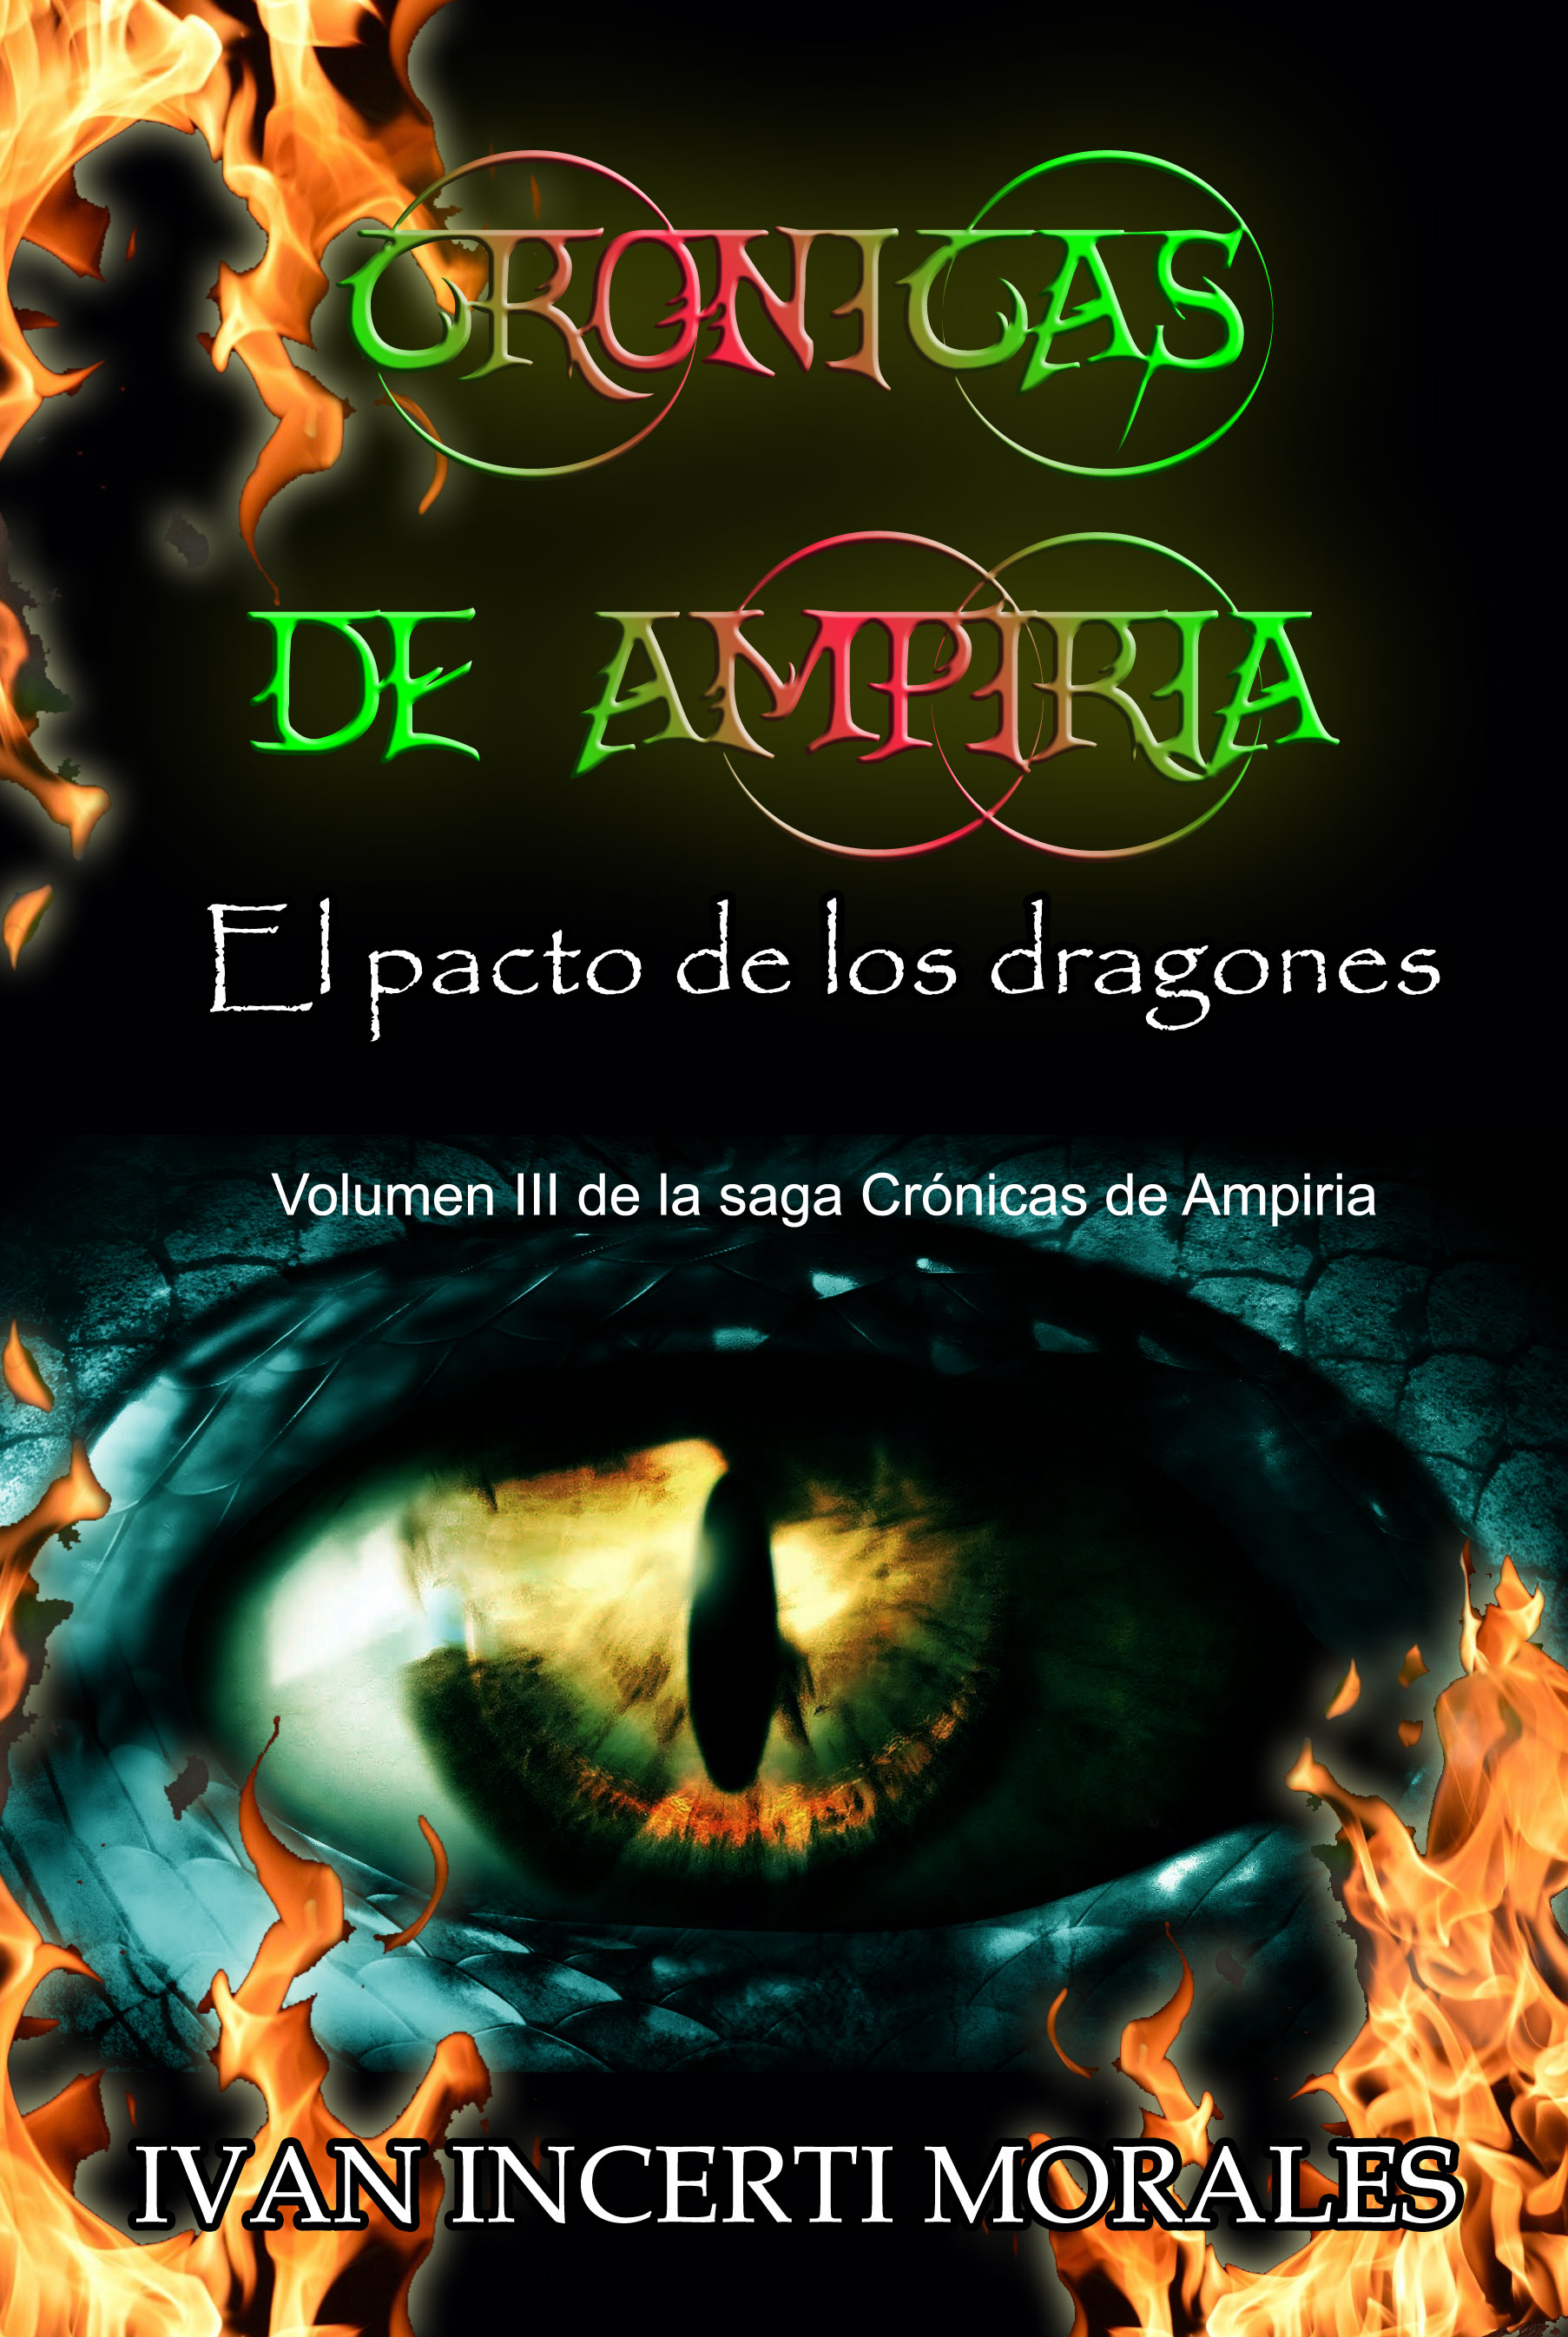 Crónicas de Ampiria: El pacto de los dragones, ya la venta